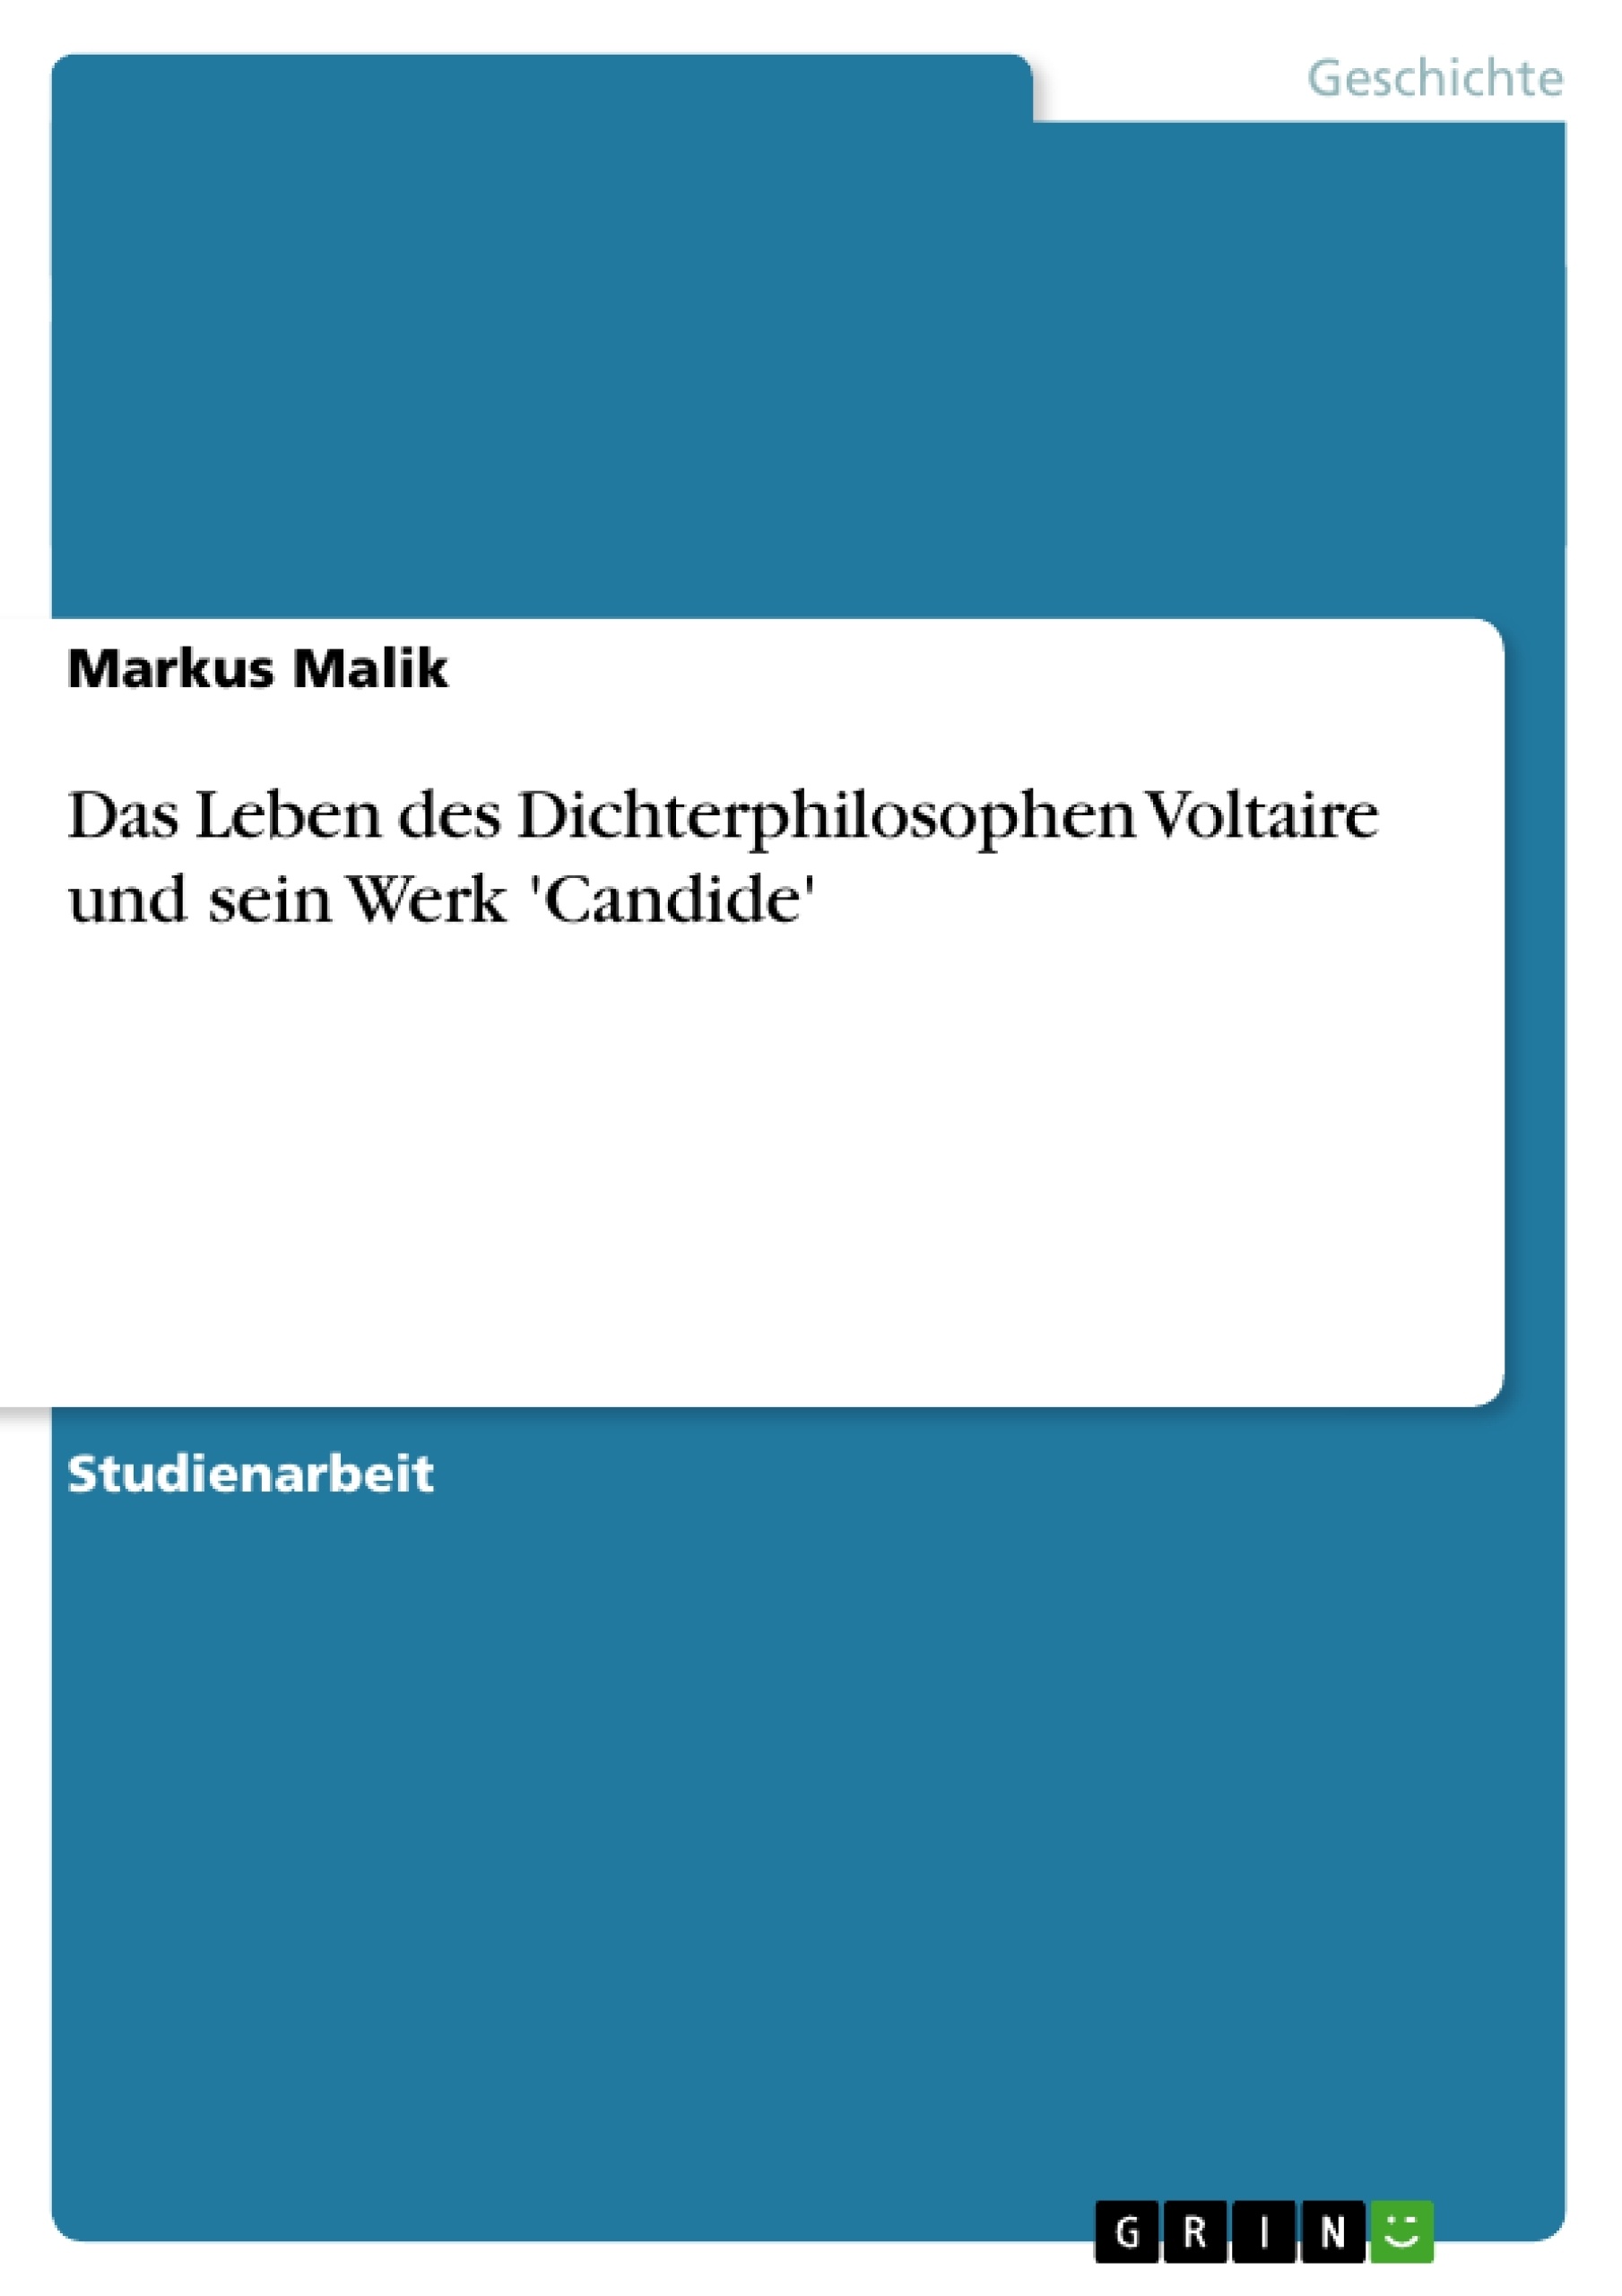 Title: Das Leben des Dichterphilosophen Voltaire und sein Werk 'Candide'